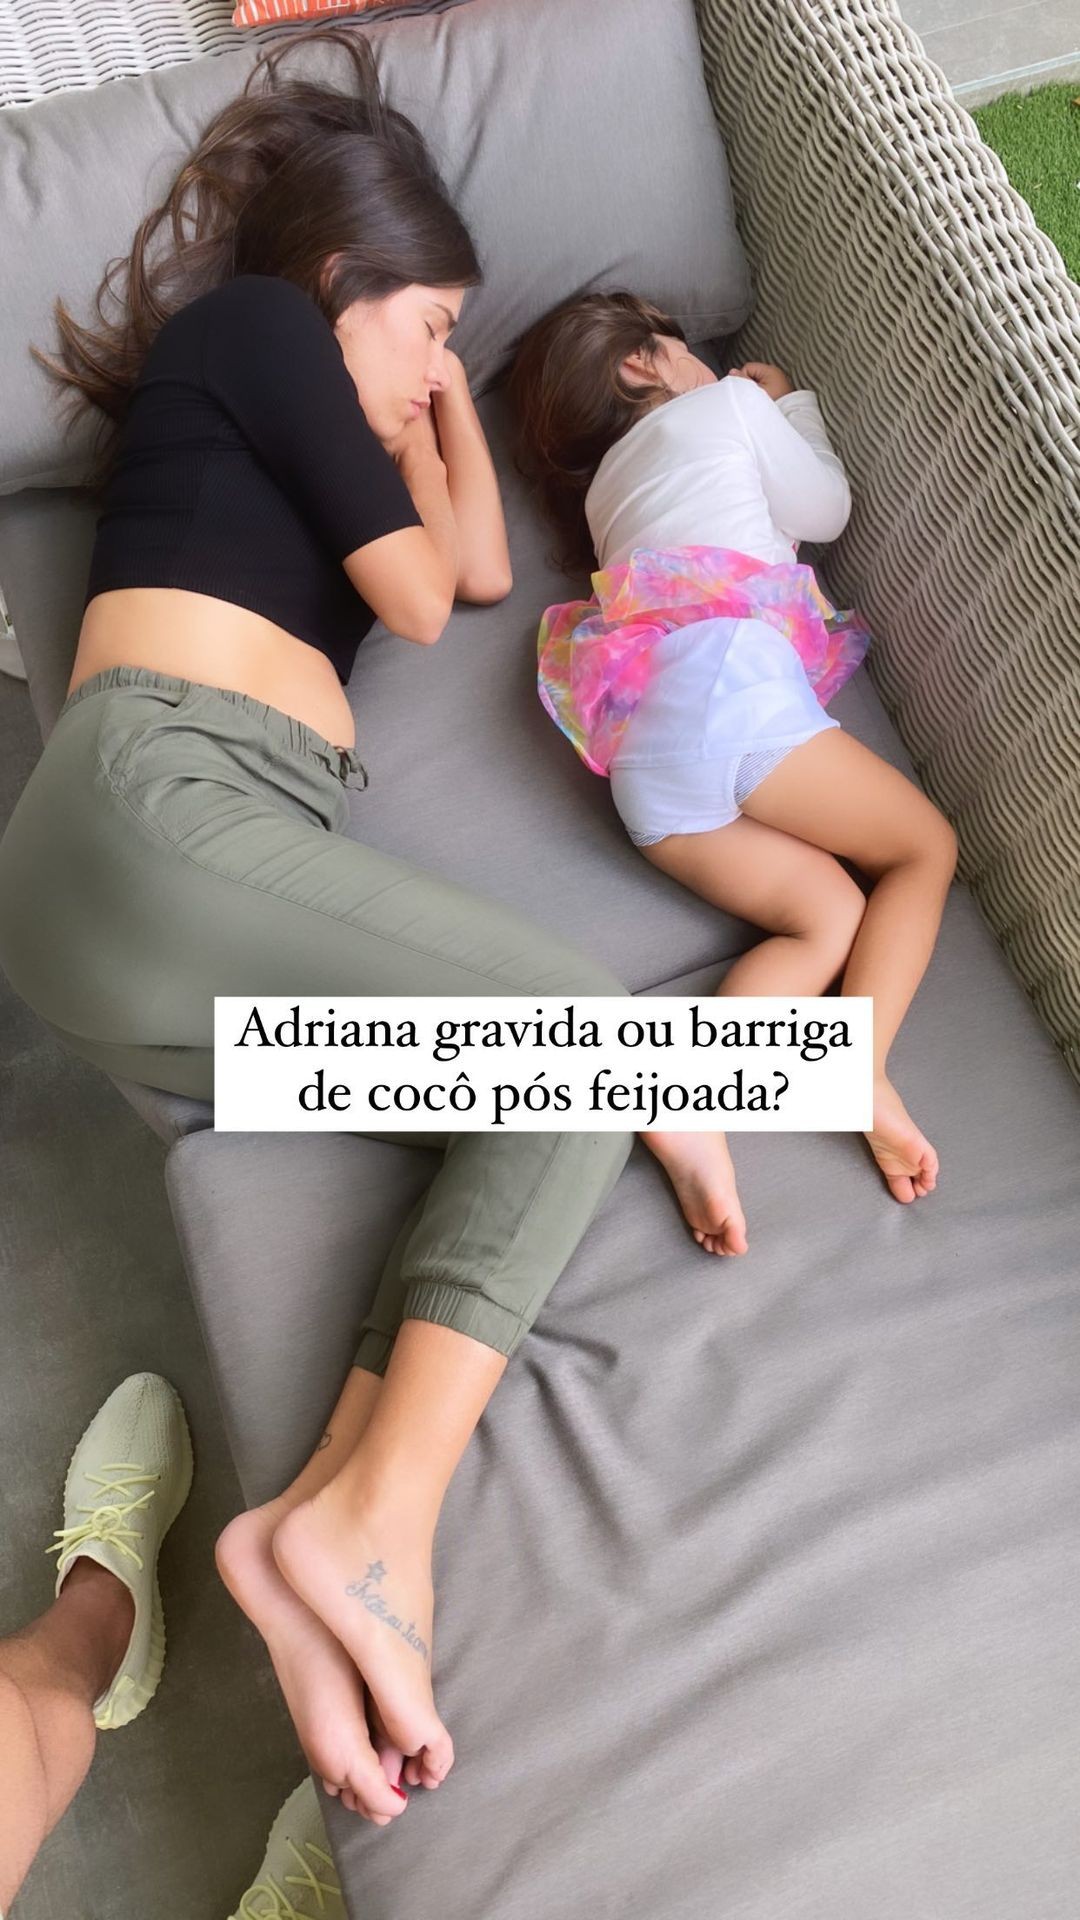 Adriana Sant'Anna aparece com barriguinha saliente em foto e brinca: "grávida ou cocô?" (Foto: Reprodução/Instagram)